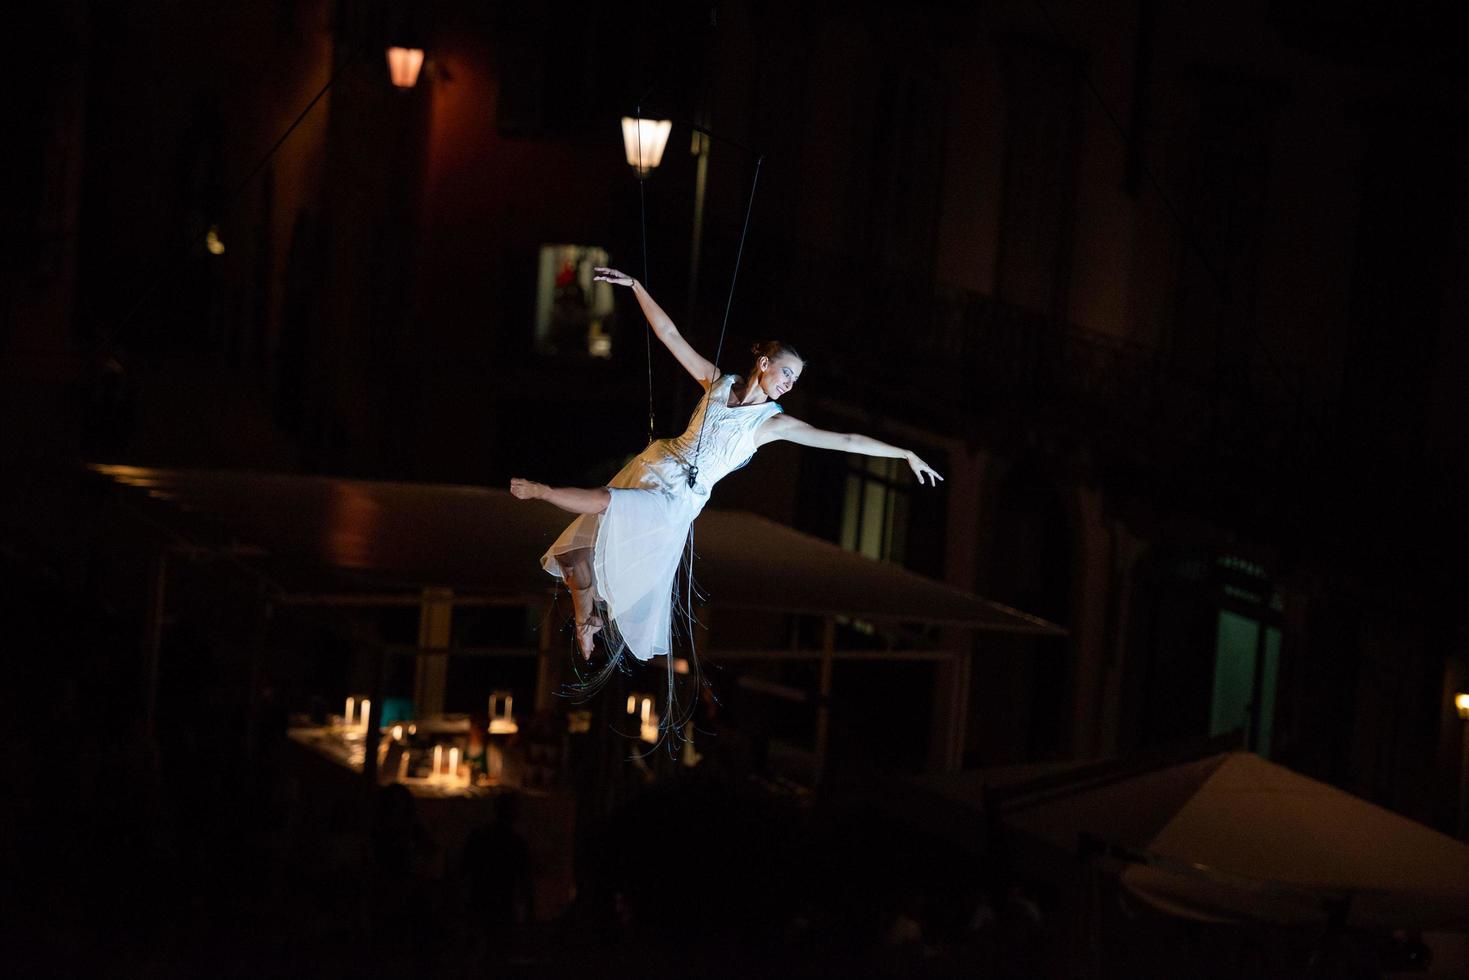 bergamo itália 14 de setembro de 2018 performance de dança acrobática suspensa no ar performance de molecoleshow foto